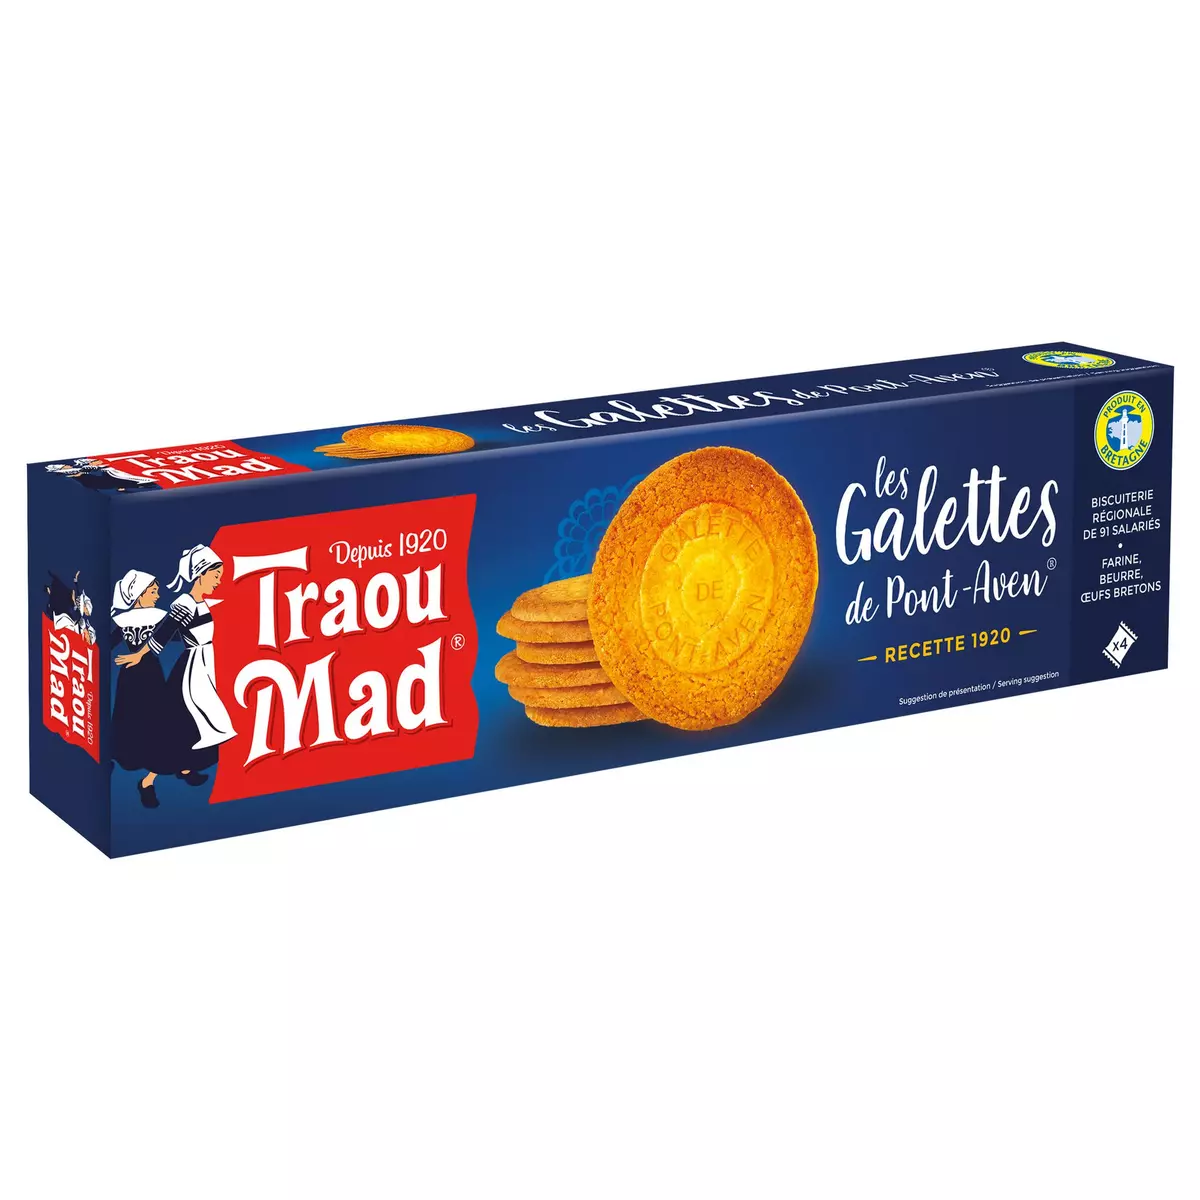 TRAOU MAD Galettes bretonnes au beurre de Pont-Aven 4x4 biscuits 130g